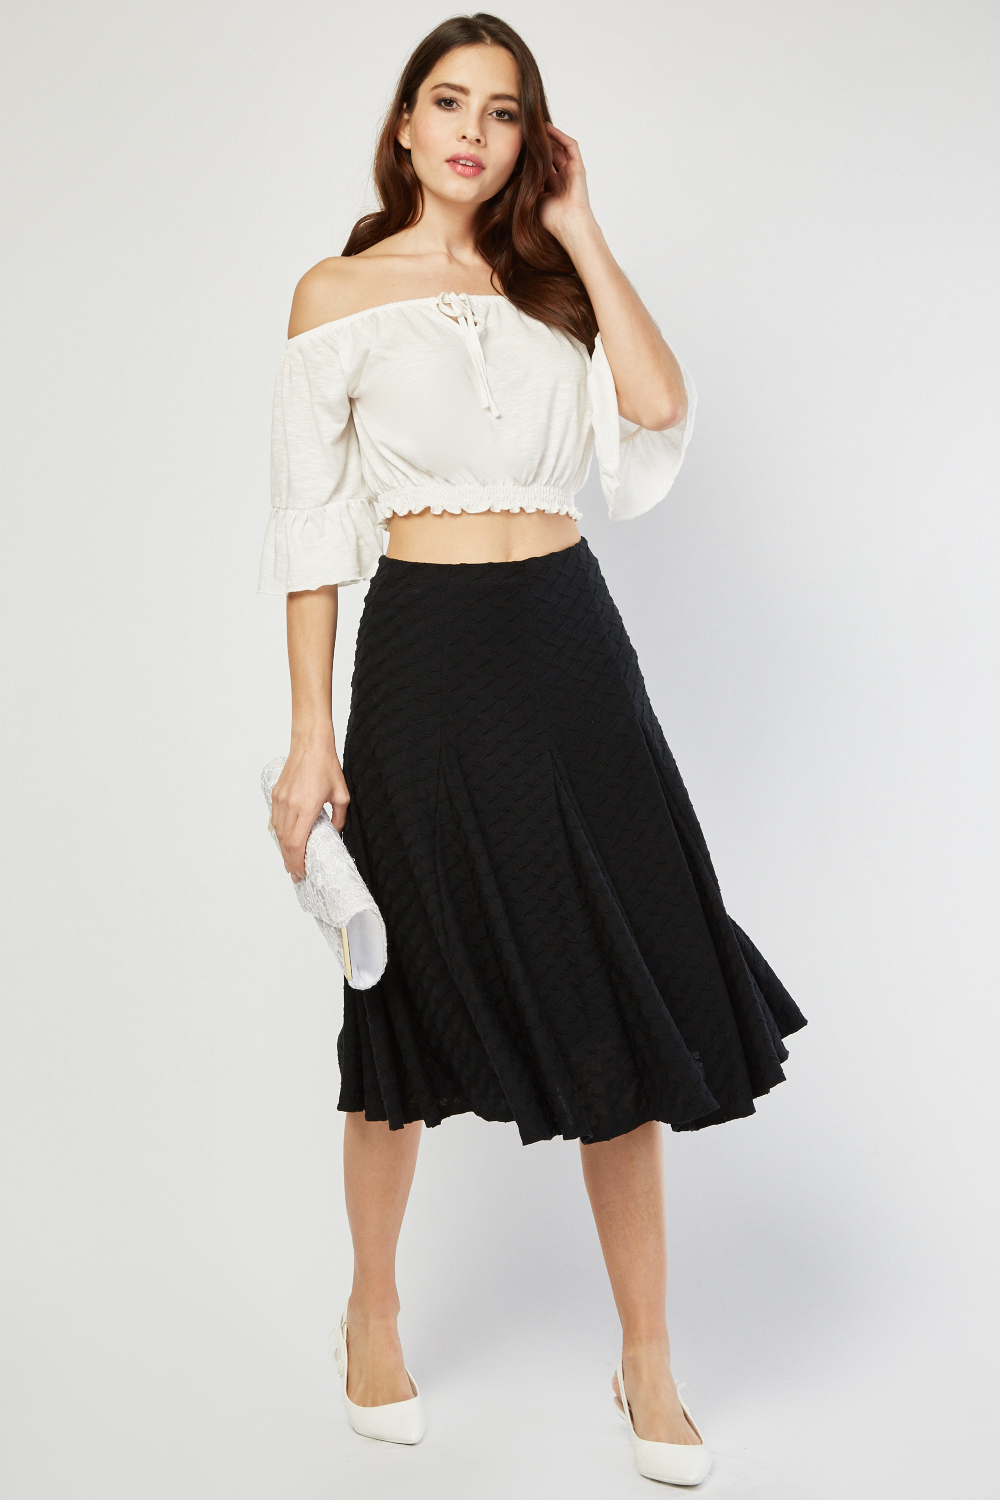 Textured Midi Godet Skirt - Just $6